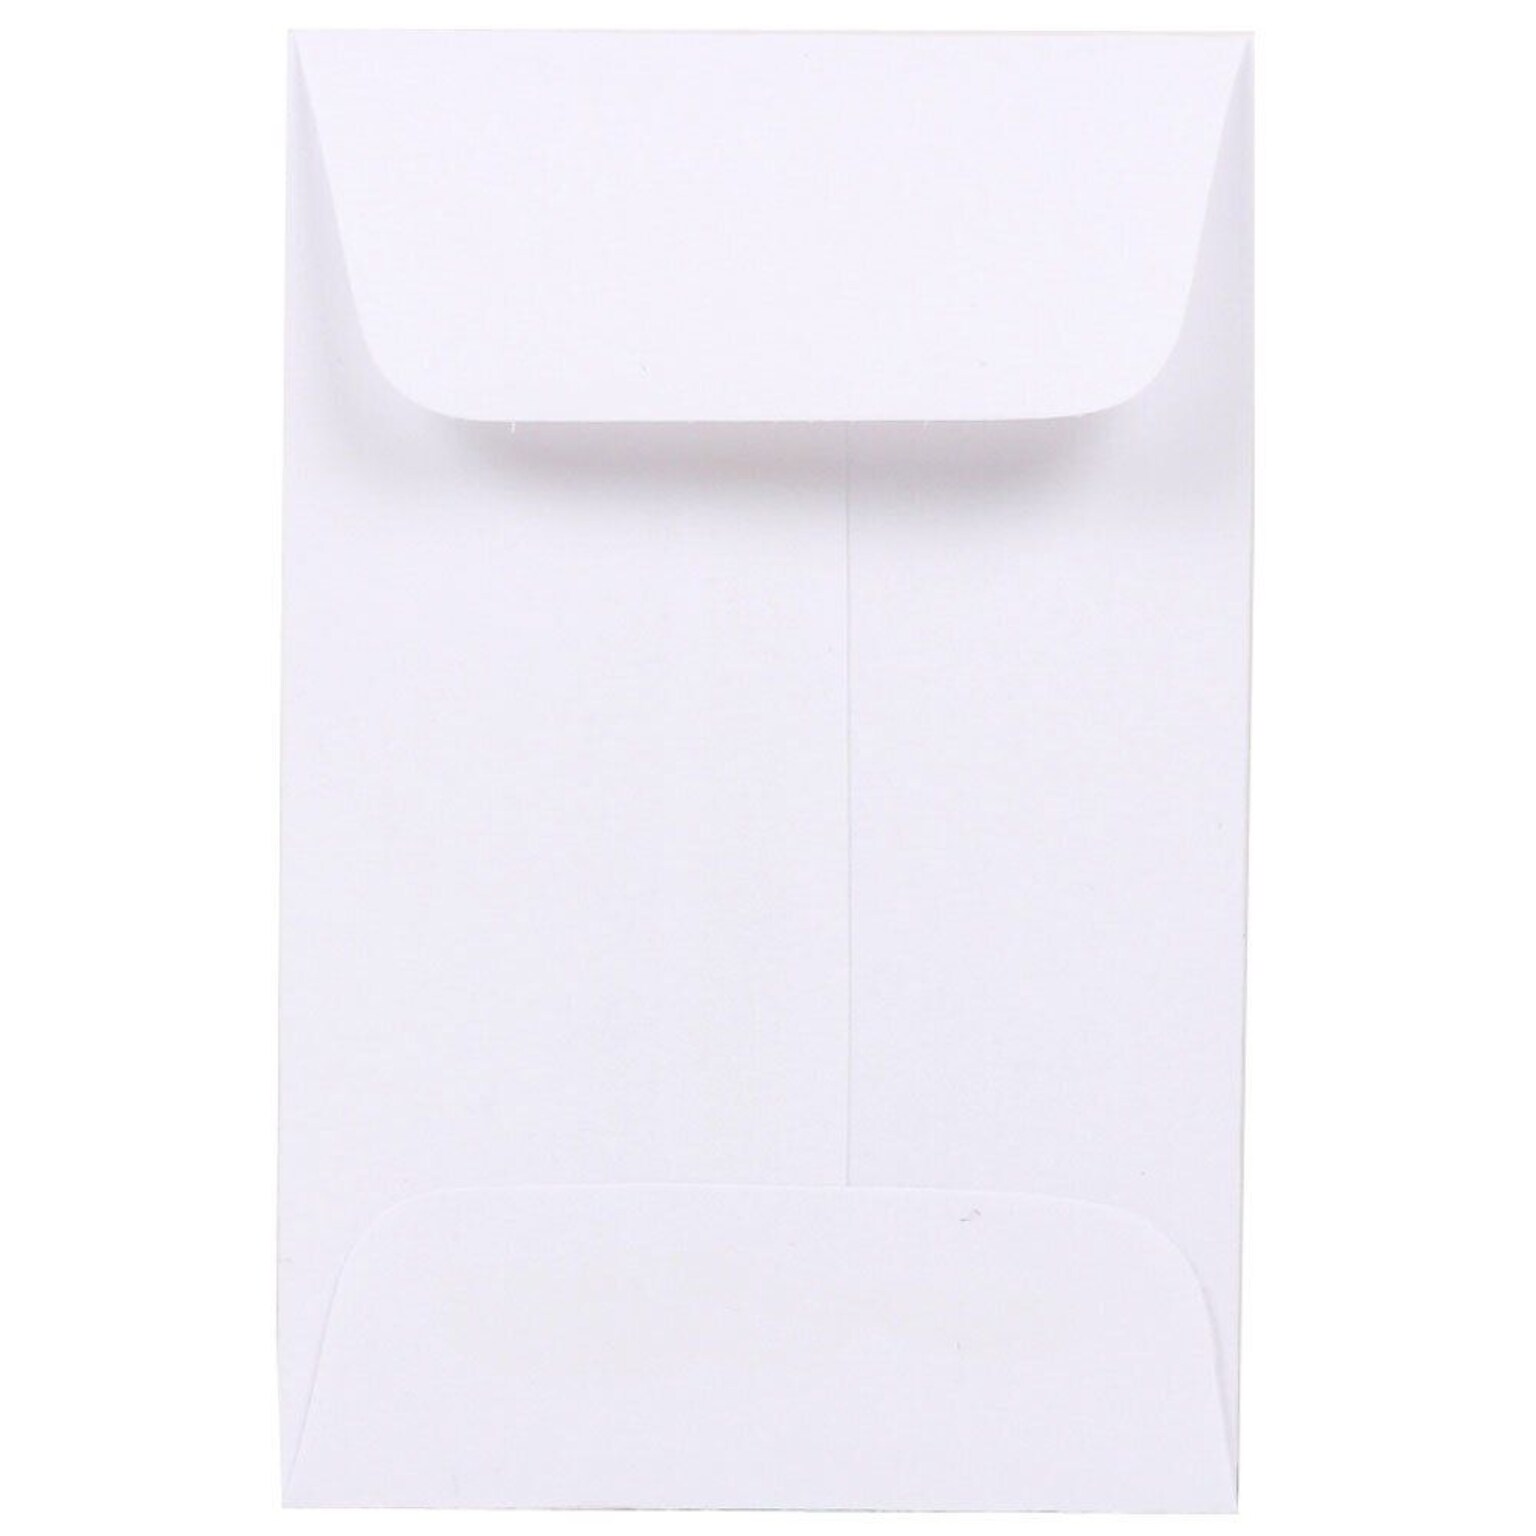 JAM Paper #1 Coin Envelope, 2 1/4 x 3 1/2, White, 100/Pack (122326658)